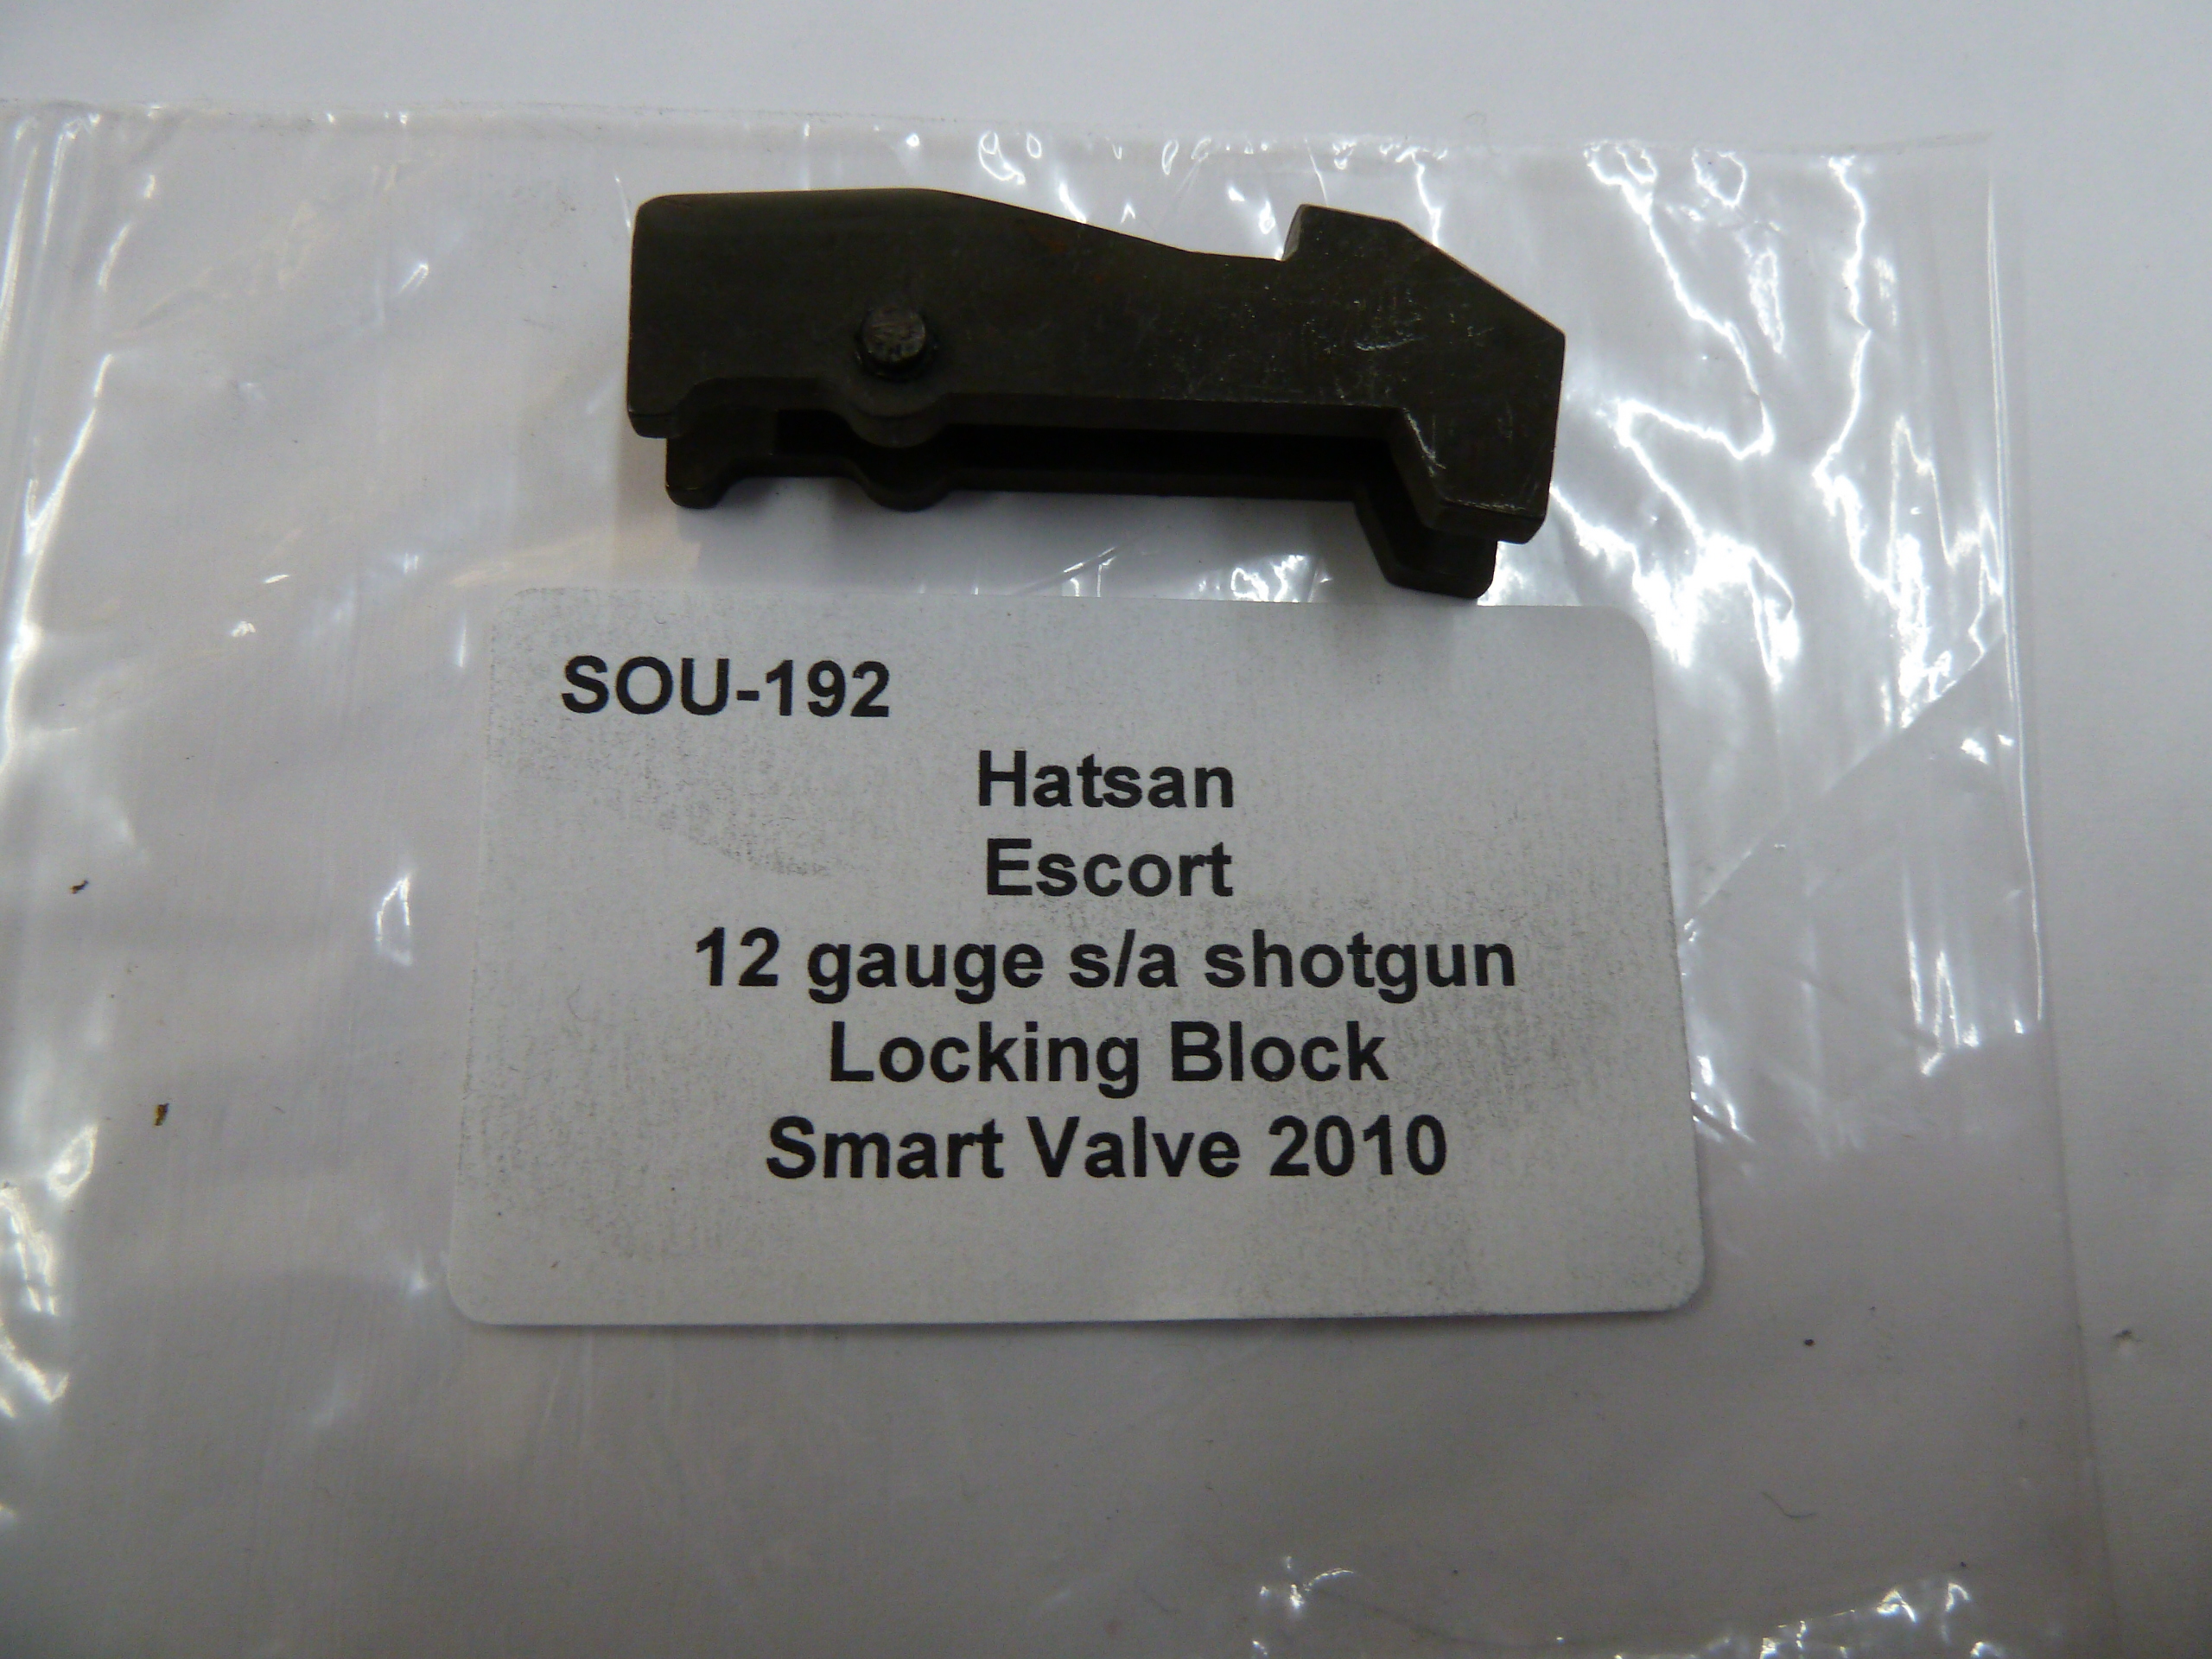 Hatsan Escort 12 gauge locking block